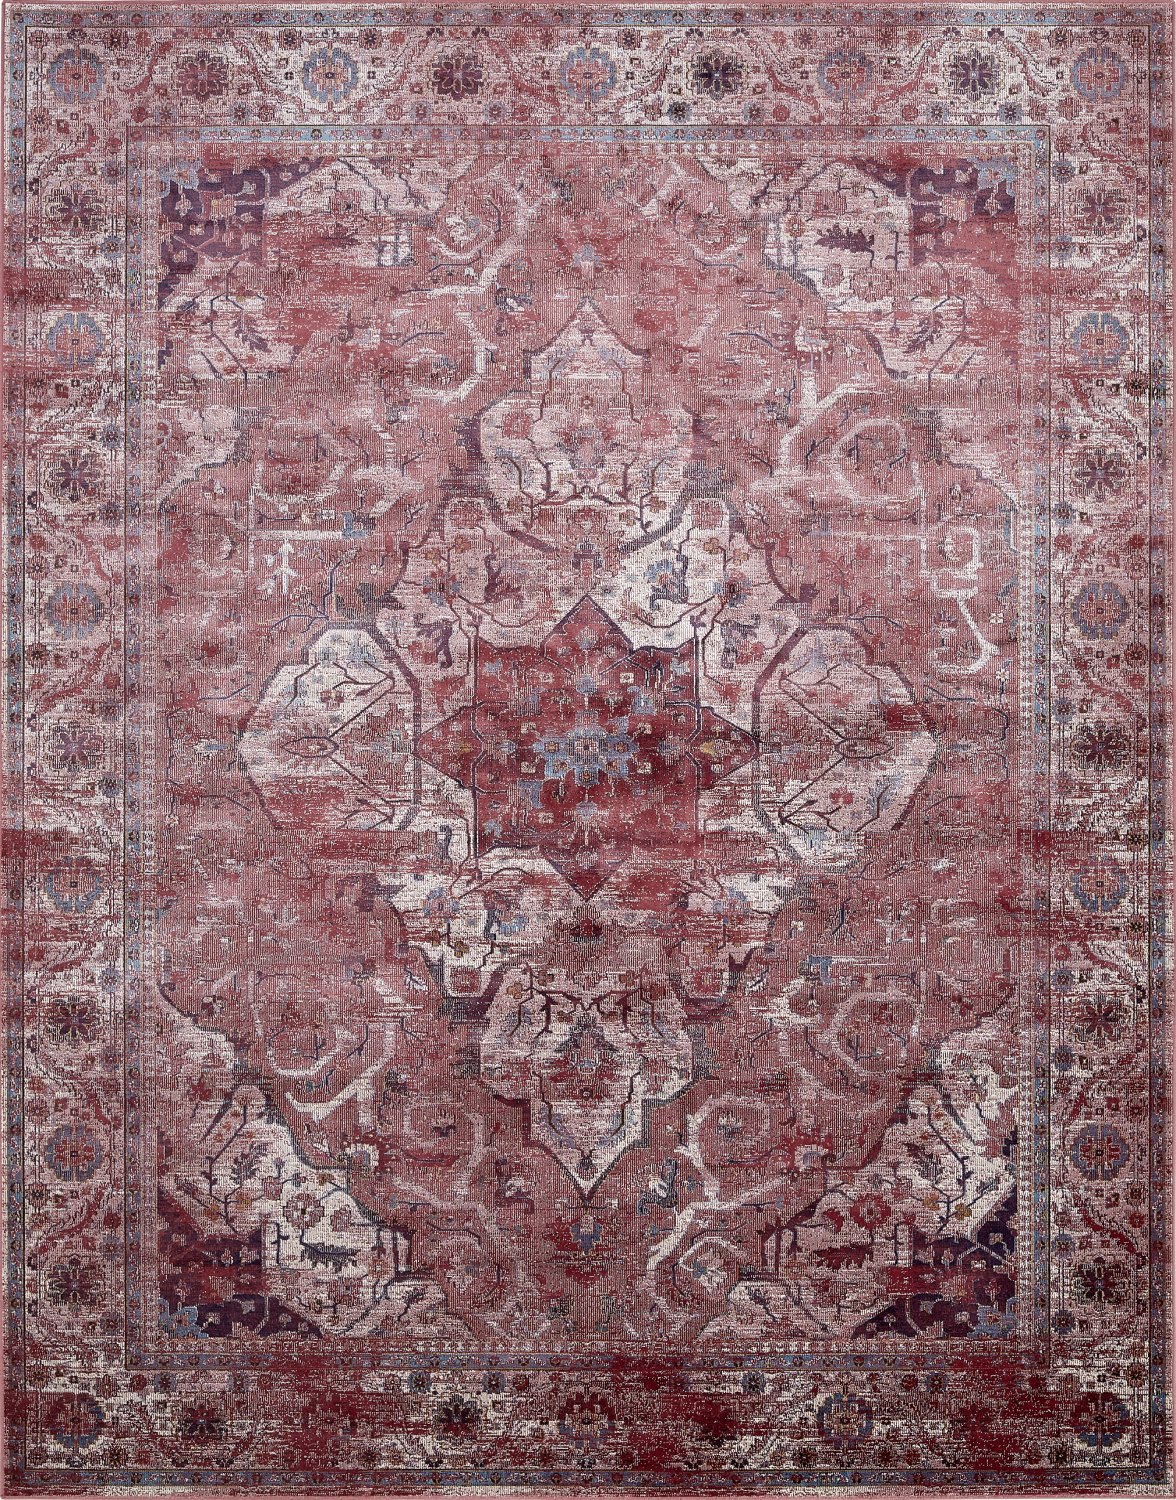 Roter Jacquard-Teppich mit orientalischem Muster | Vartian